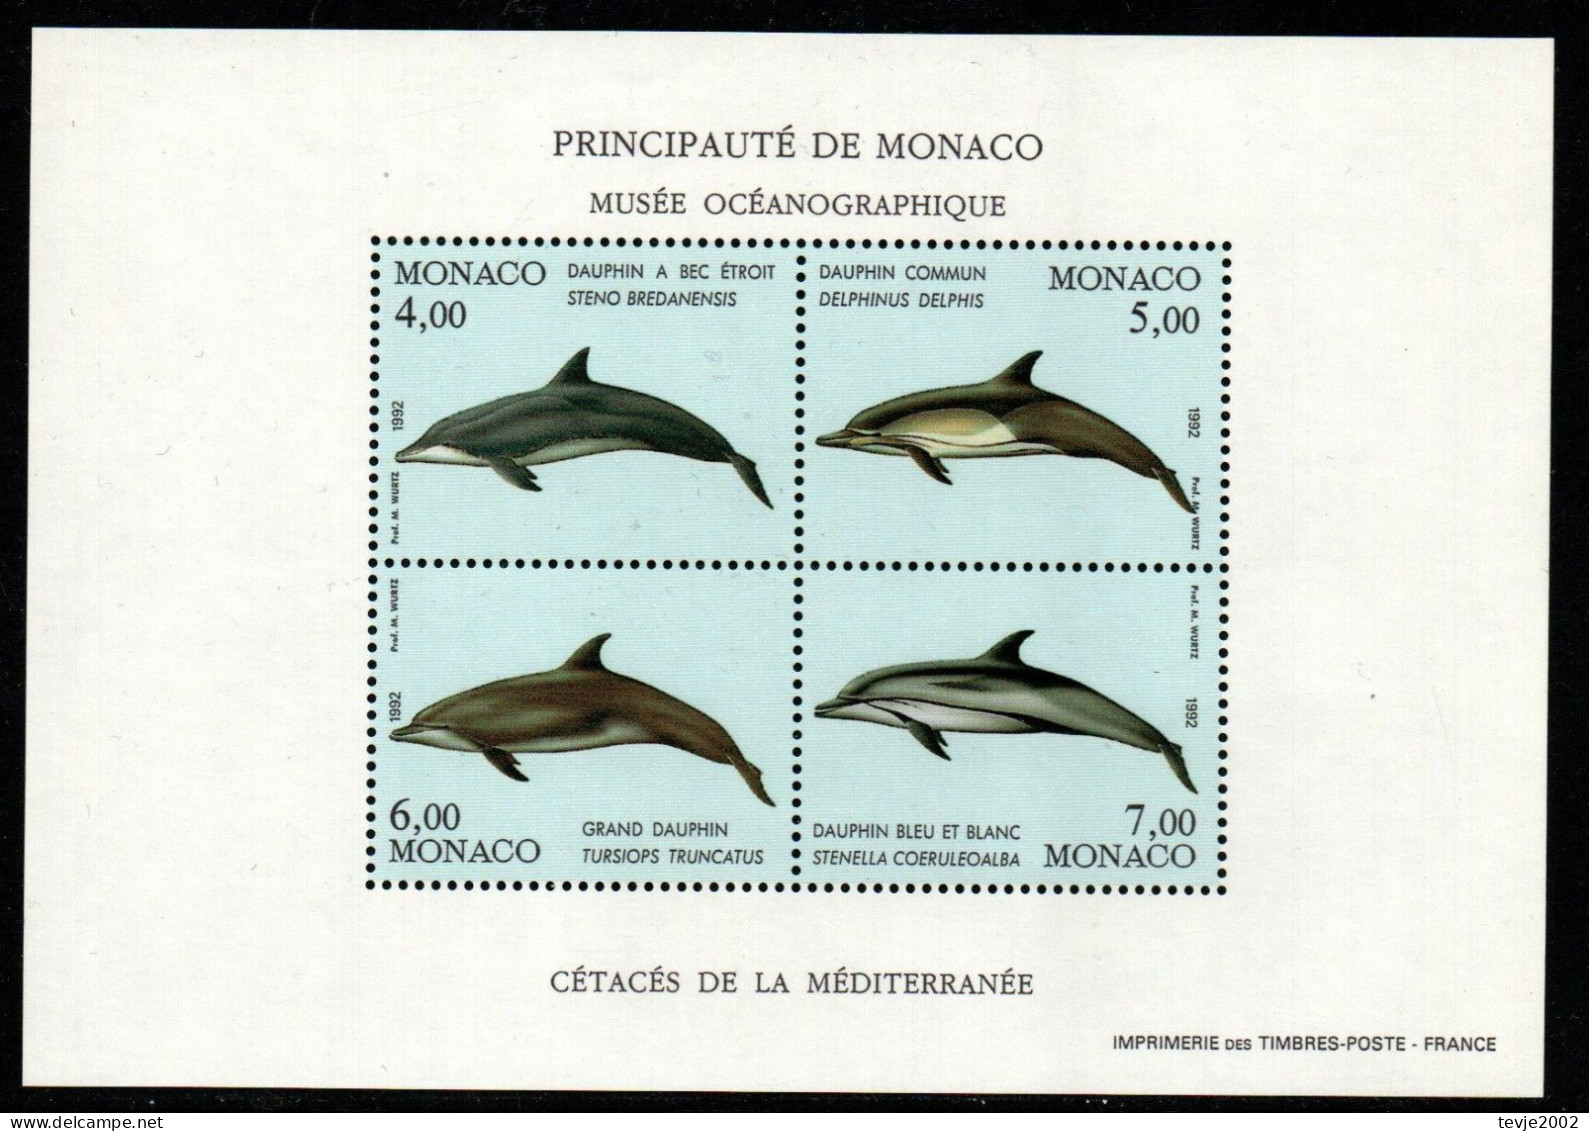 Monaco 1992 - Mi.Nr. Block 54 - Postfrisch MNH - Tiere Animals Deplphine Dolphins - Dauphins